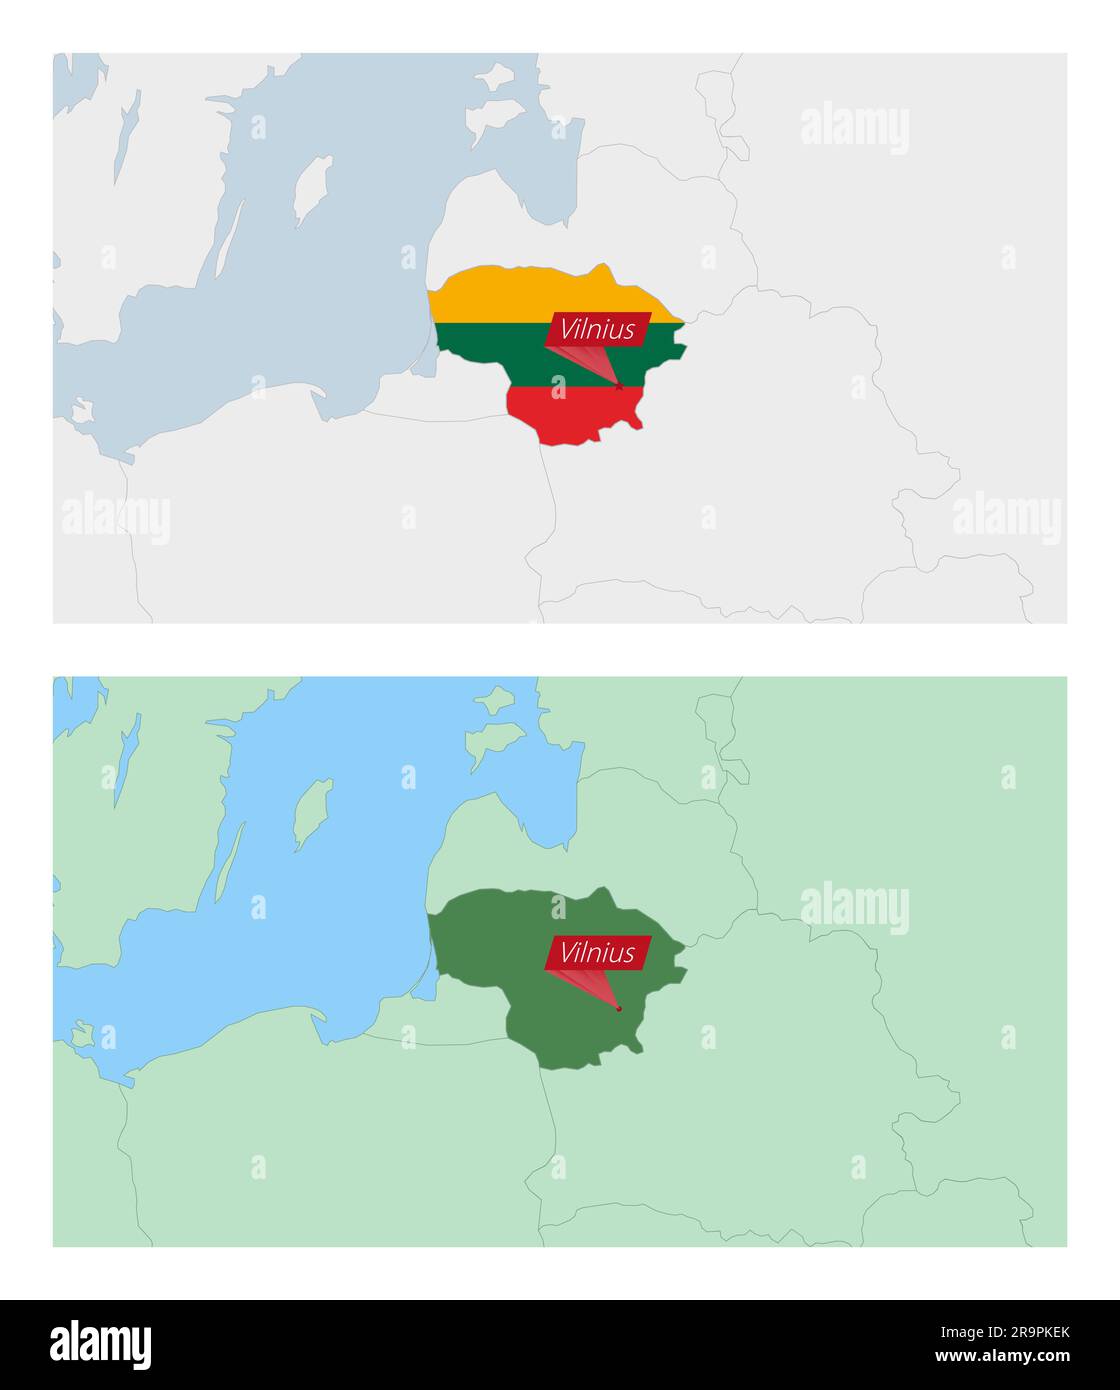 Mappa della Lituania con pin della capitale del paese. Due tipi di mappa della Lituania con i paesi vicini. Modello vettoriale. Illustrazione Vettoriale